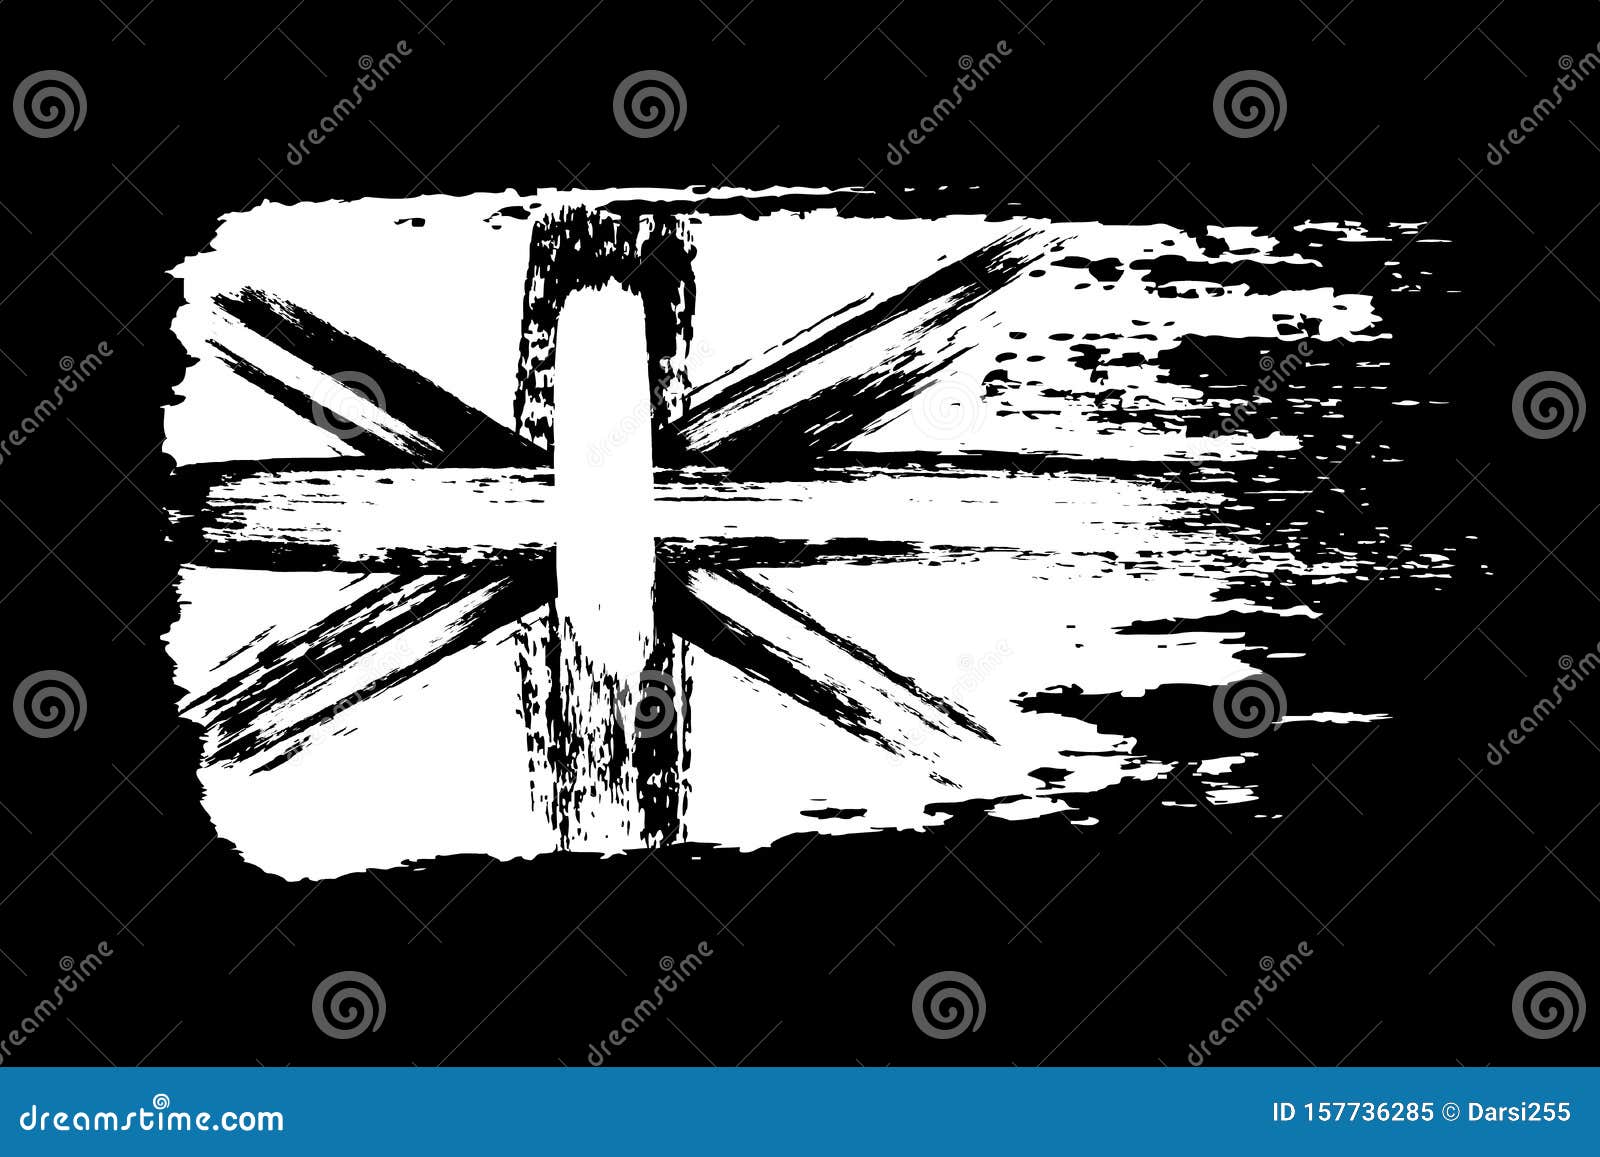 Cờ Liên hiệp Anh cổ điển: Cờ Liên hiệp Anh cổ điển là biểu tượng về sự kiêu hãnh và lòng yêu nước. Với thiết kế độc đáo được kết hợp giữa sắc đỏ, trắng, xanh, cờ Liên hiệp Anh là biểu hiện trực quan của một quốc gia hùng mạnh và đương đại. Cho phép bạn được tận hưởng sự kiêu sa của Vương quốc Anh trong bất cứ nơi đâu.